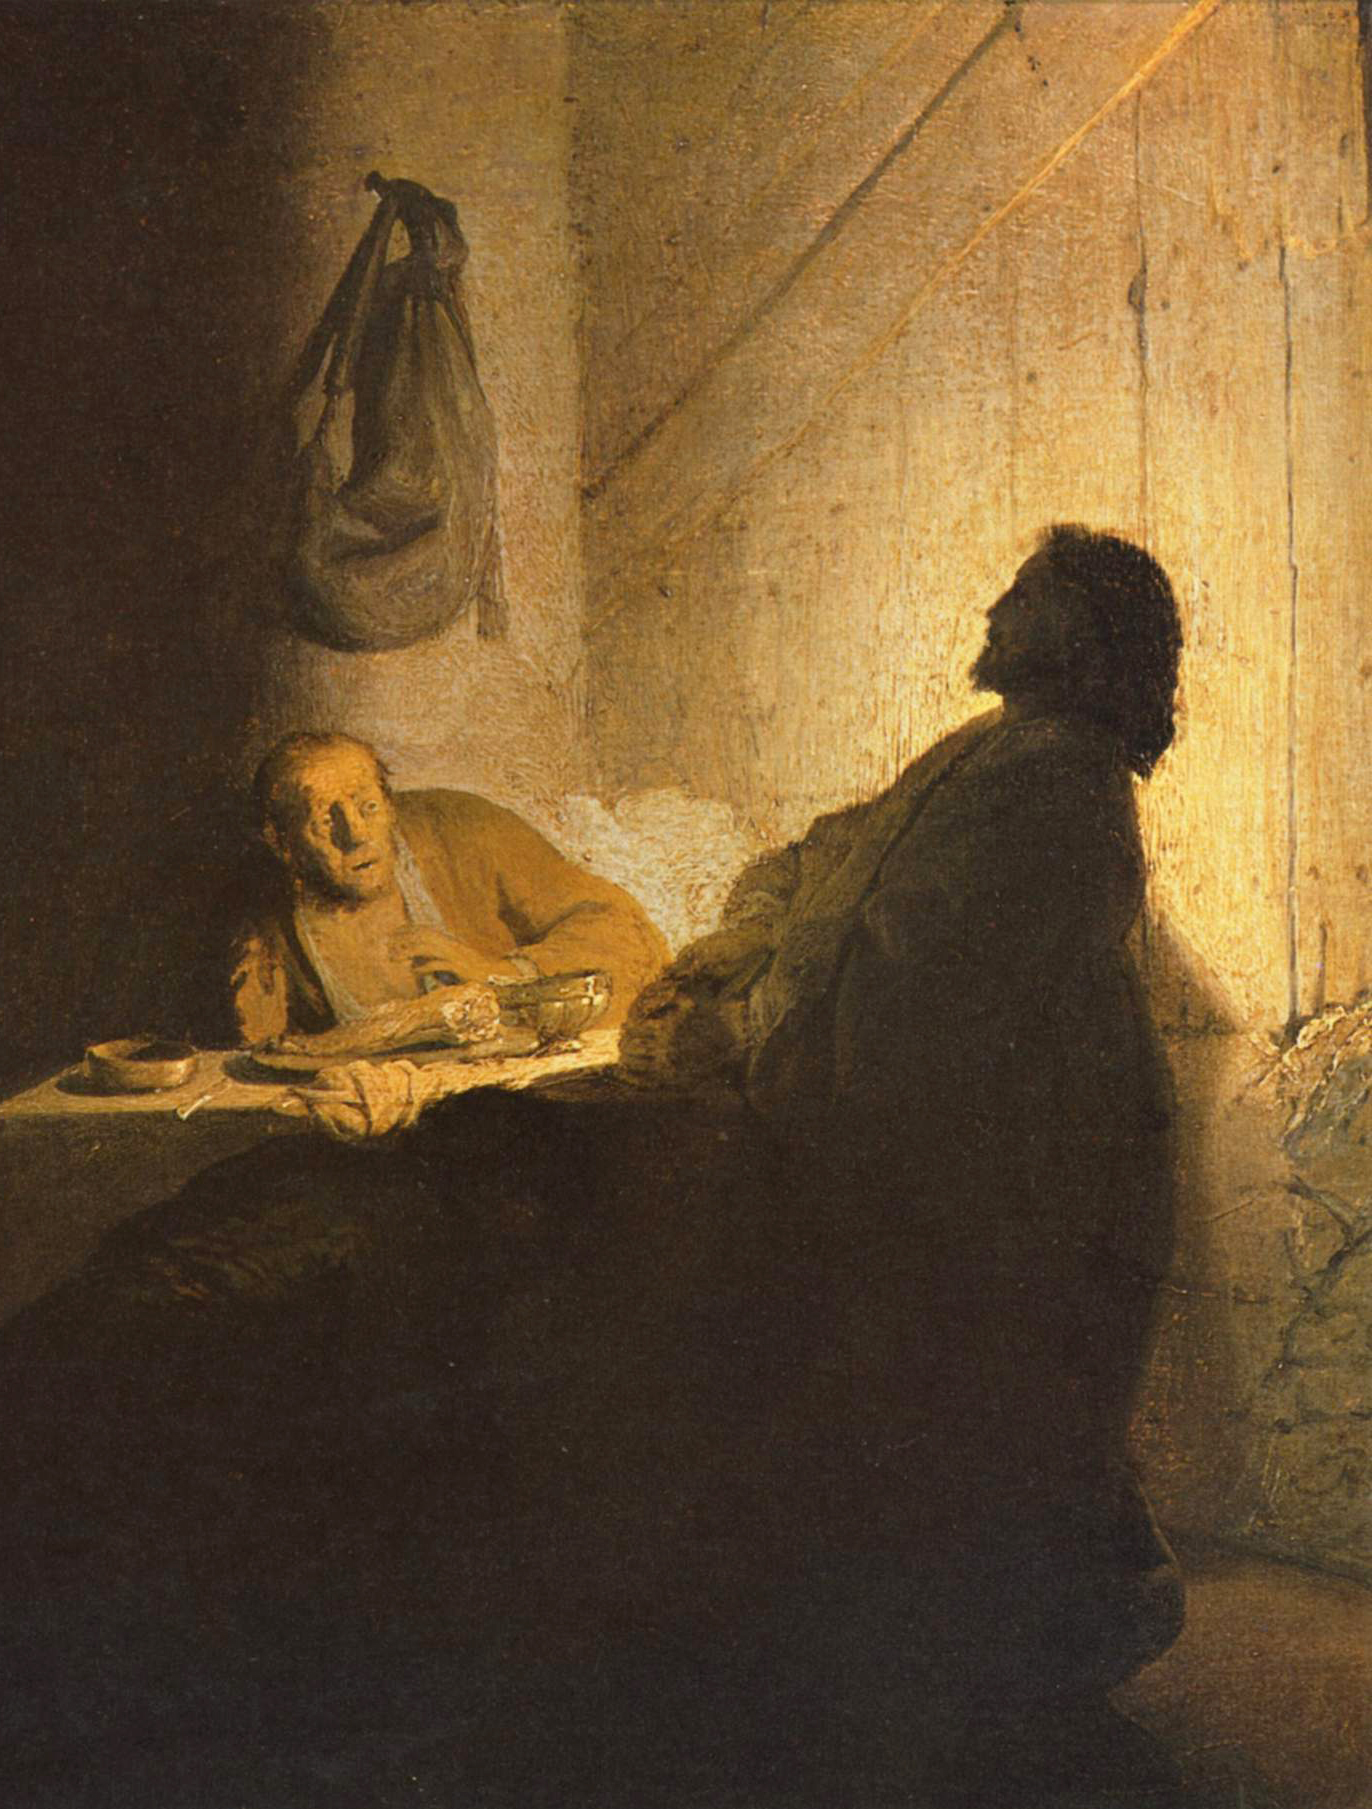 Rembrandt Cena in Emmaus spiegazione e analisi accademia artistica